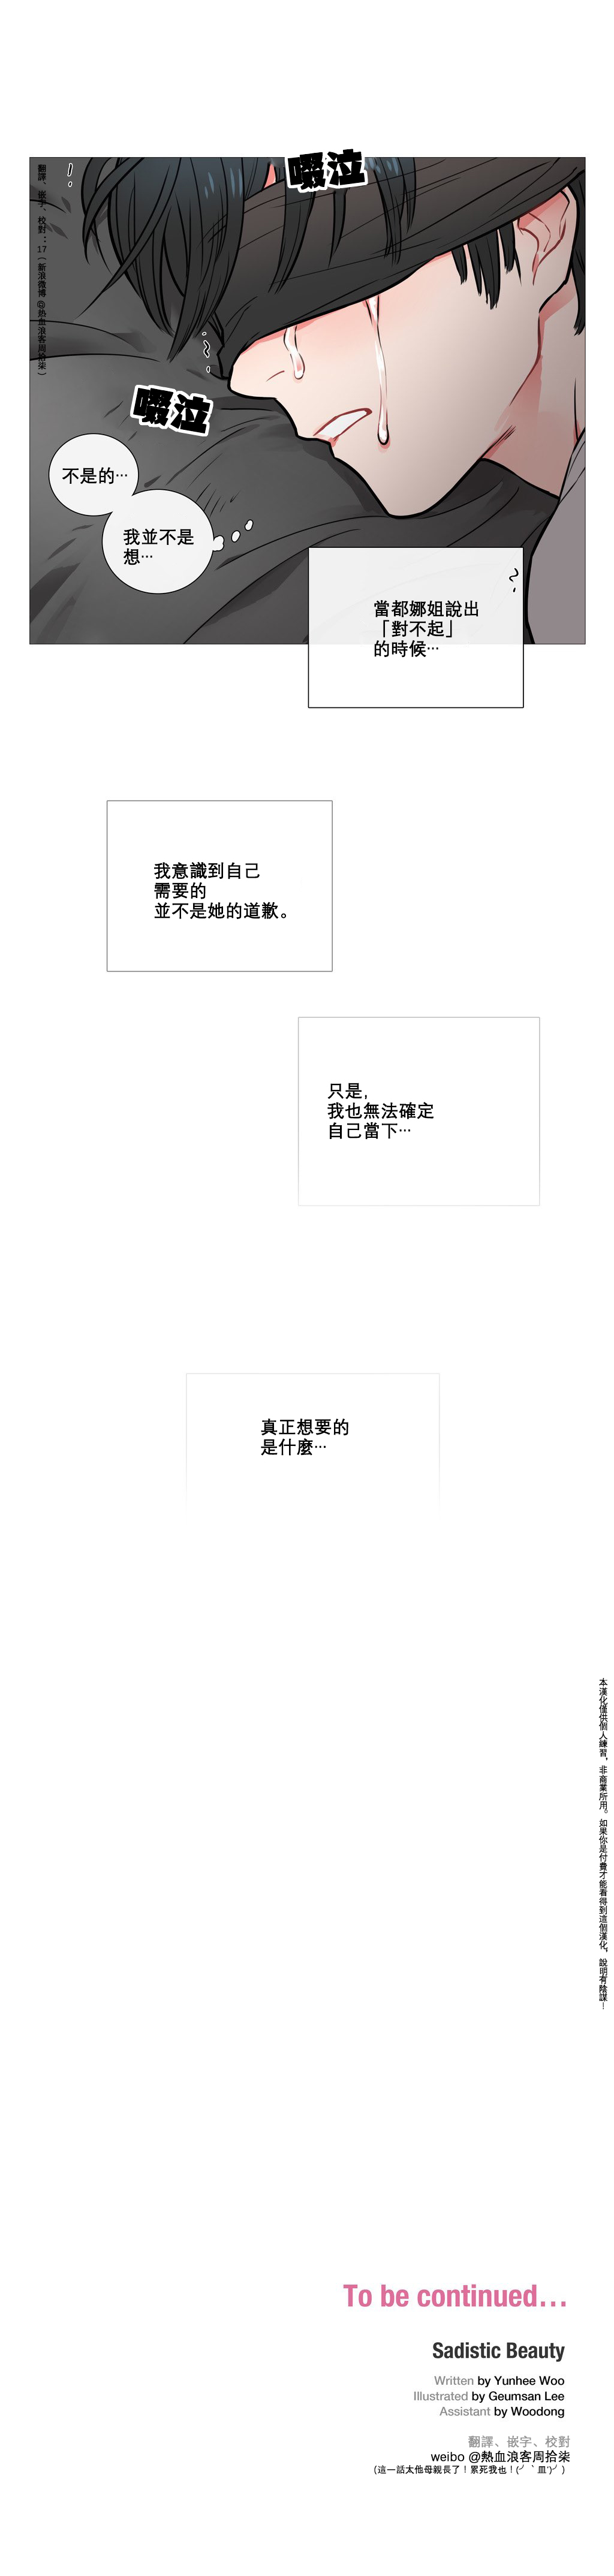 【ジンシャン】サディスティックビューティーCh.1-28【チャイニーズ】【17汉化】